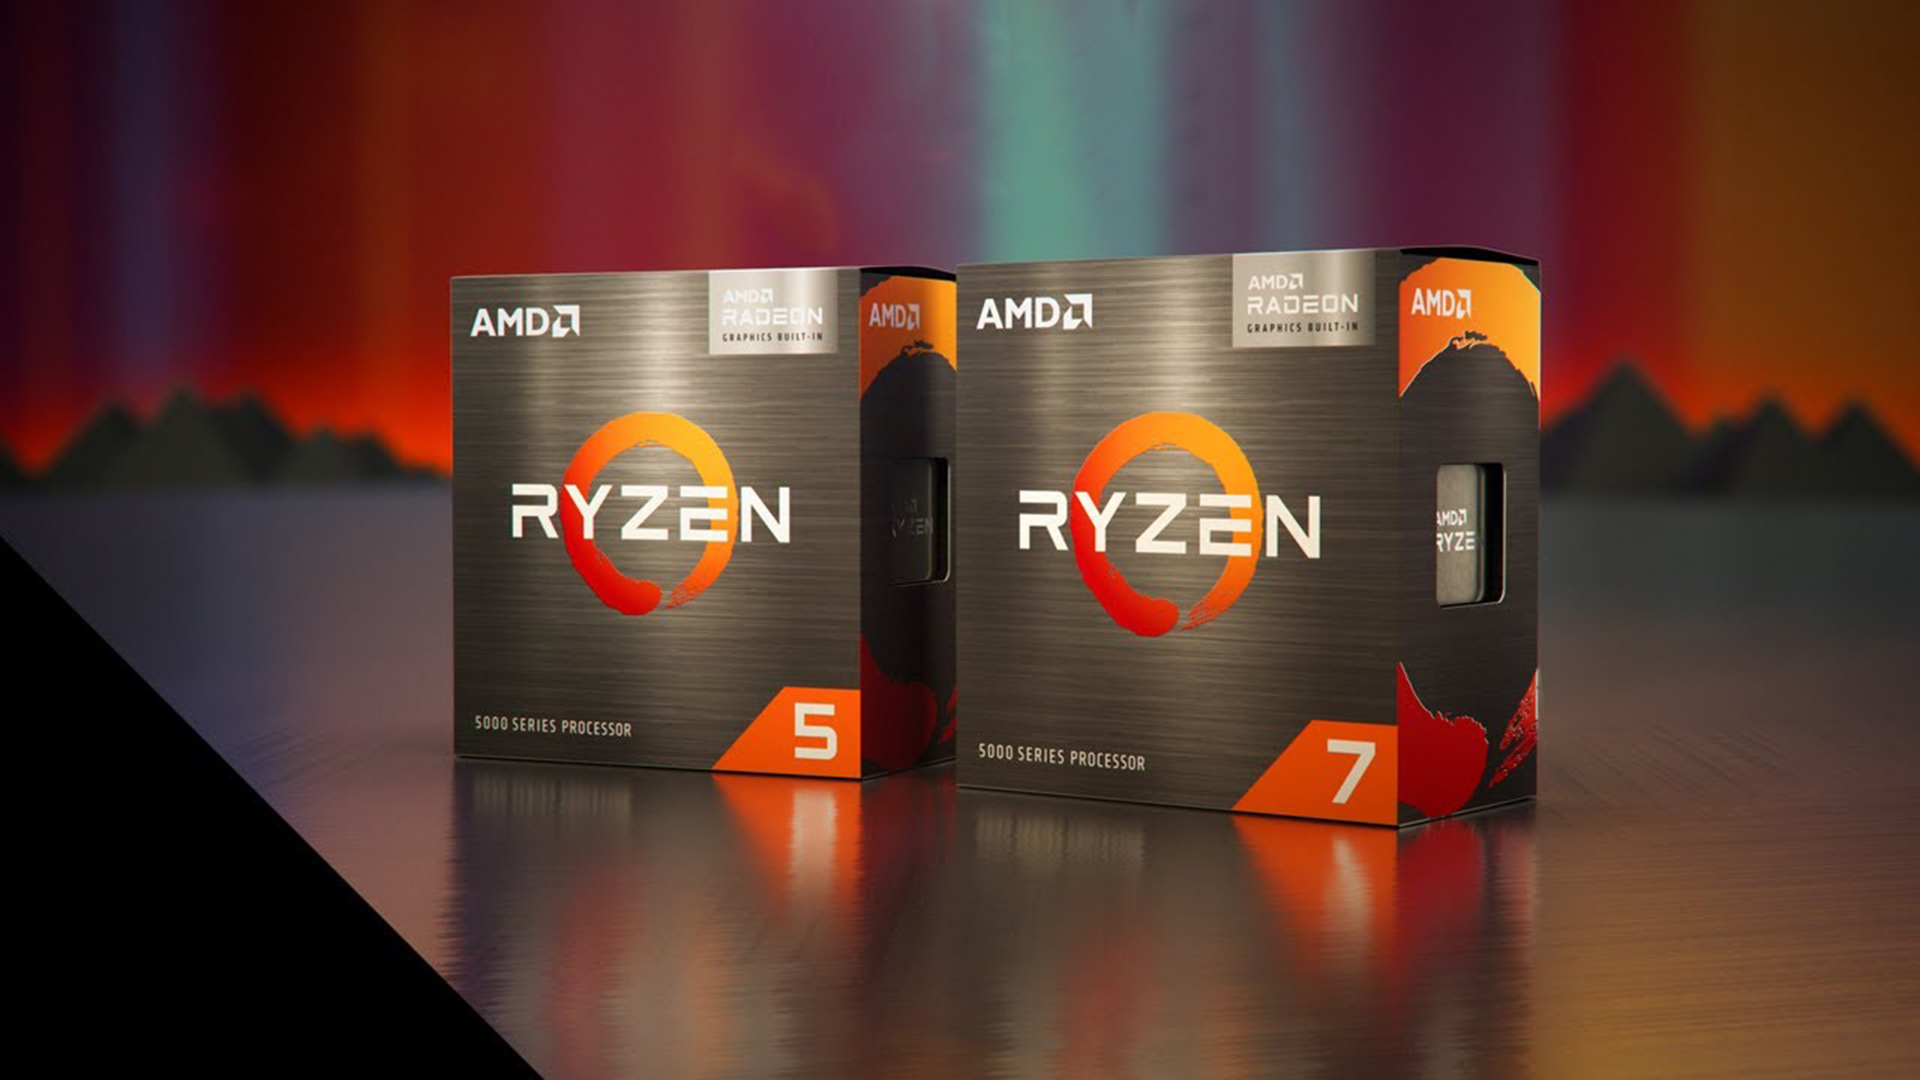 AMD 25% Cpu માર્કેટ શેરની નજીક જઈને Intel પર દબાણ લાવવાનું ચાલુ રાખે છે